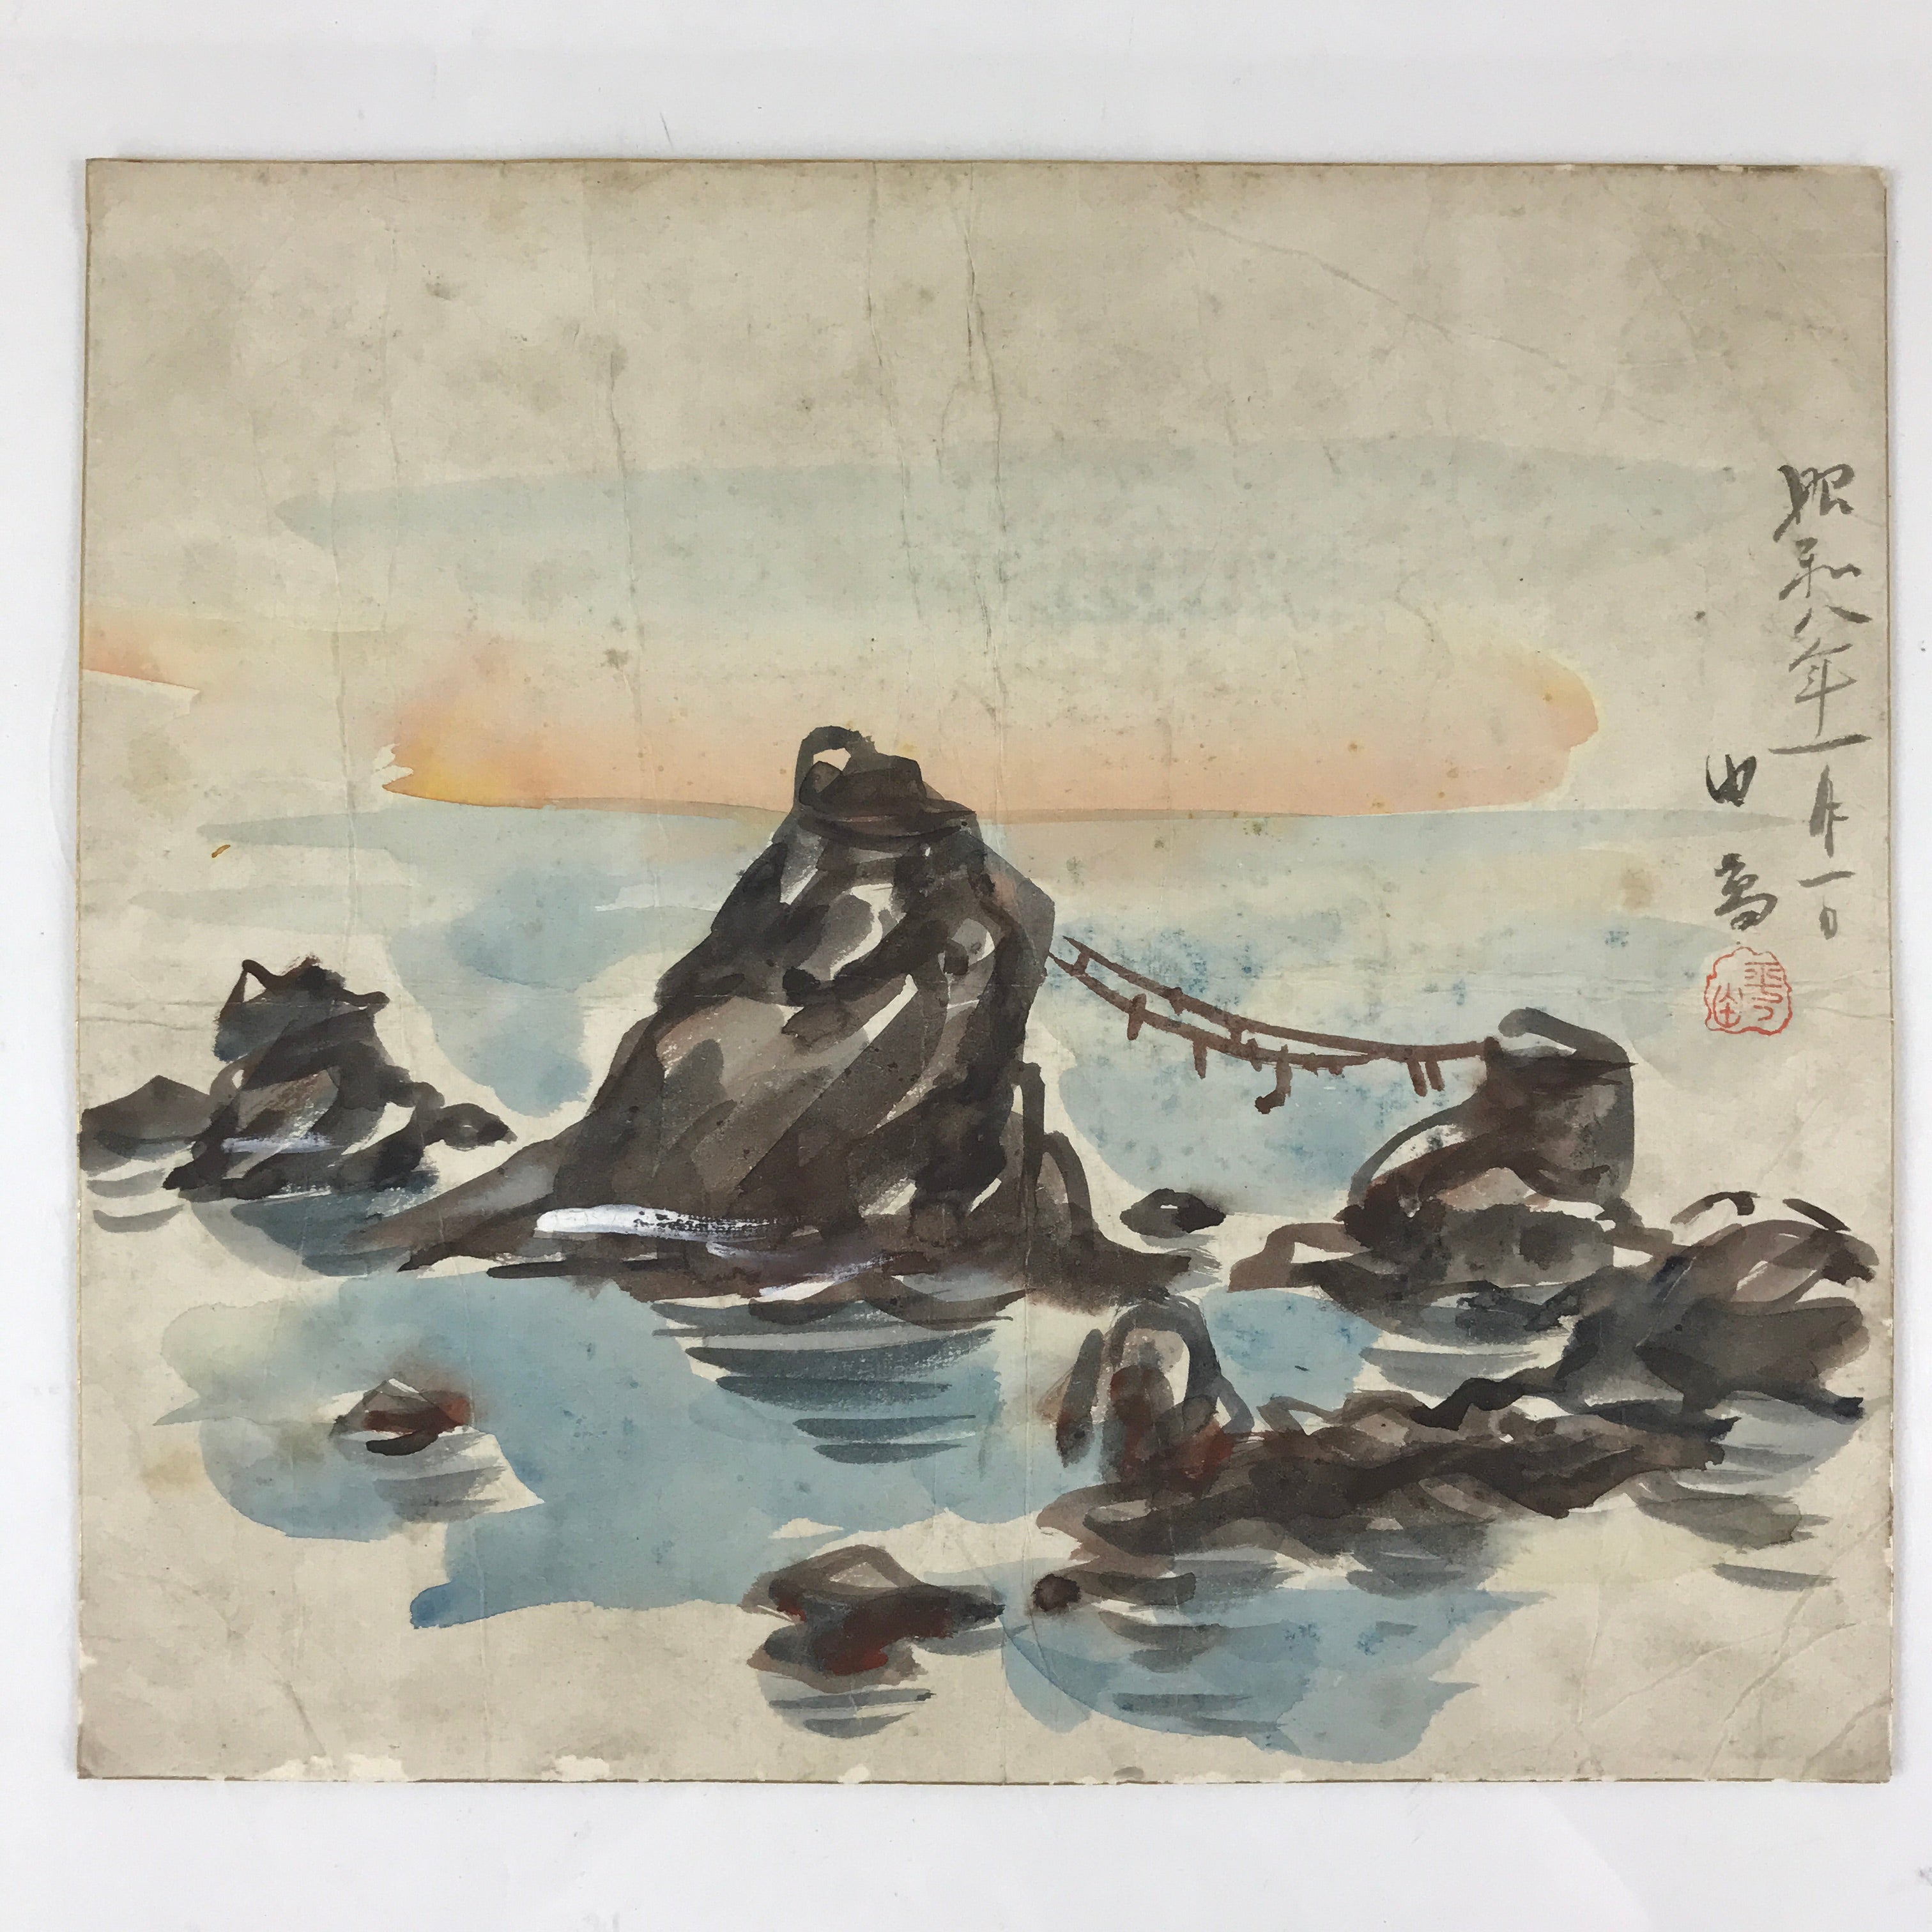 Japanese Art Board Painting Meotu-Iwa Rocks Ocean Ocean Painting SignedA486